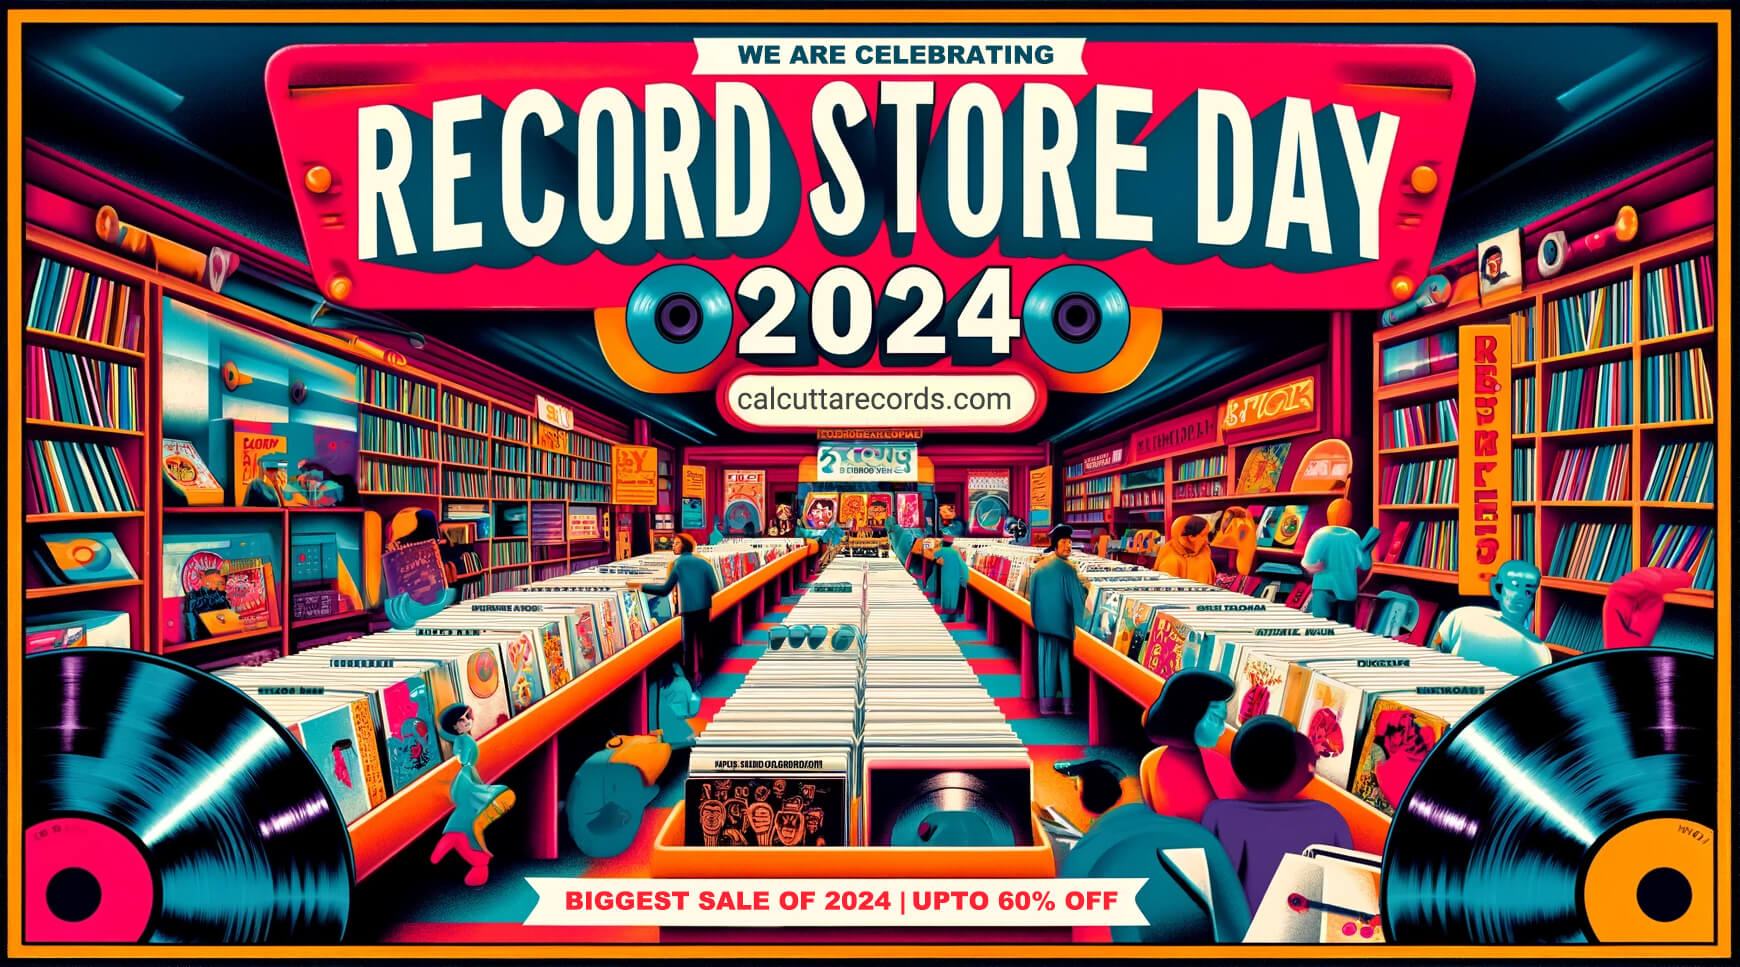 Record Store Day Sale 2024 at CalcuttaRecords.com